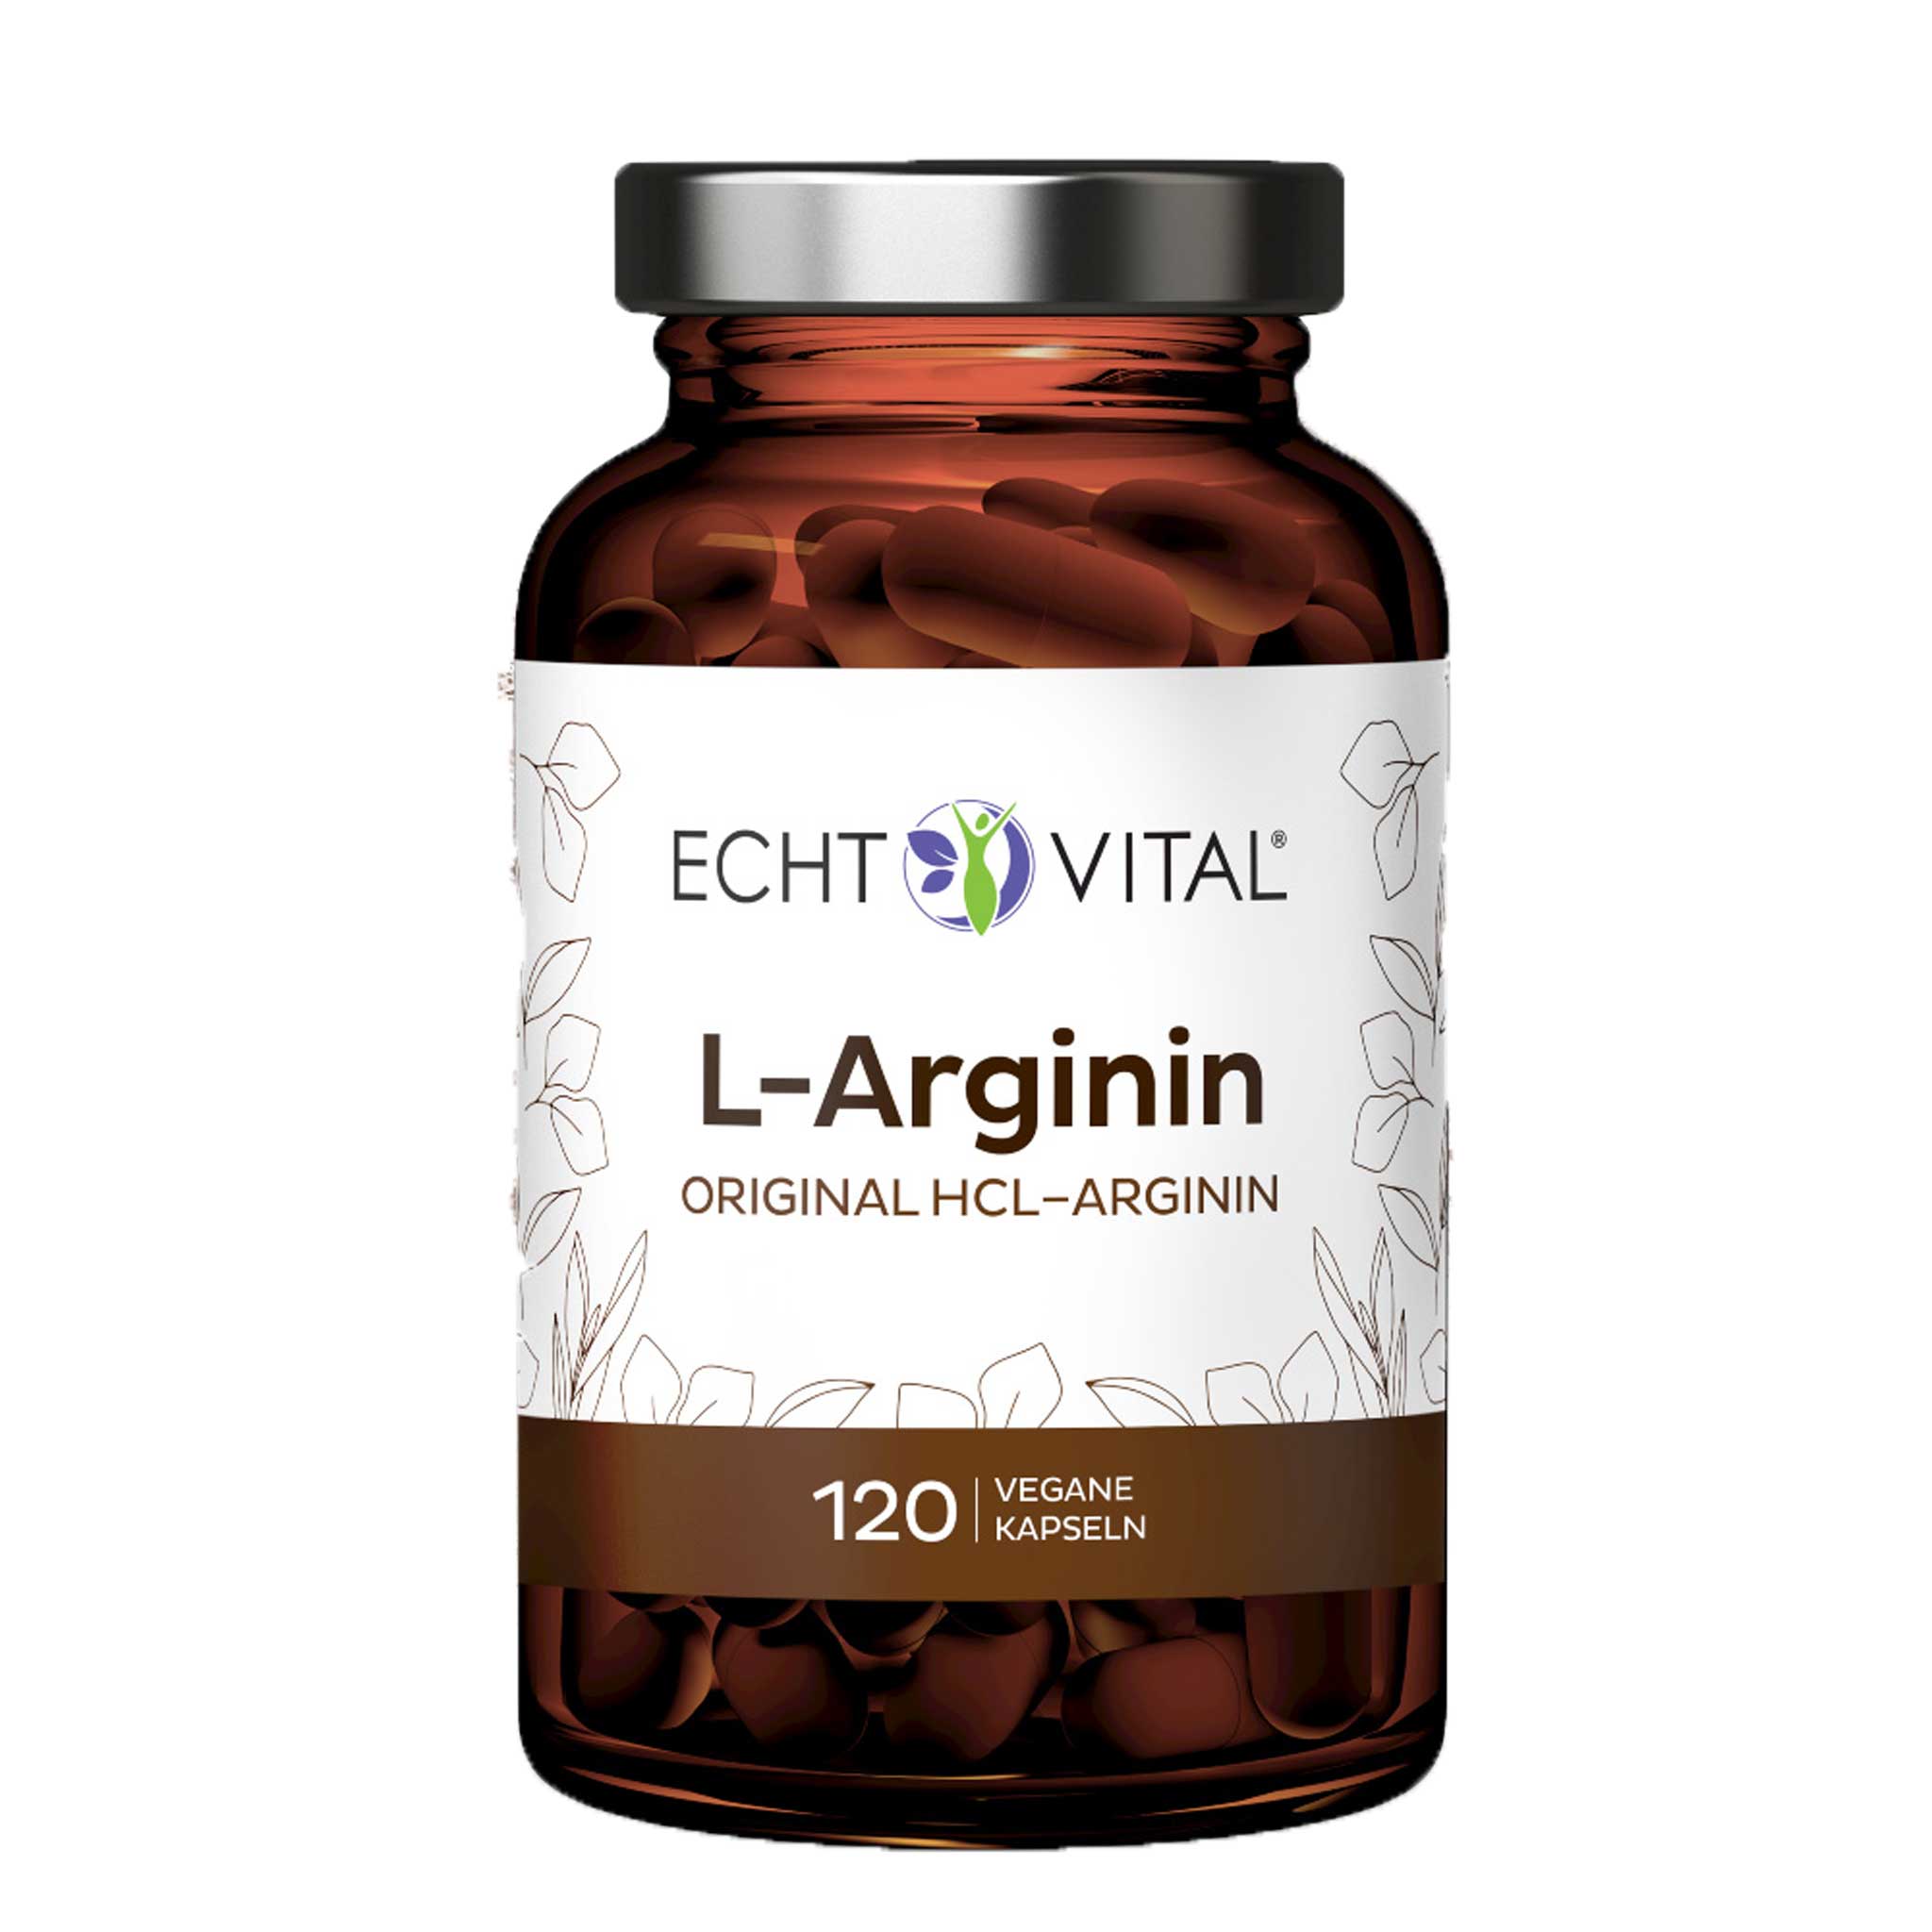 L-Arginin Kapseln von Echt Vital beinhaltet 120 vegane Kapseln